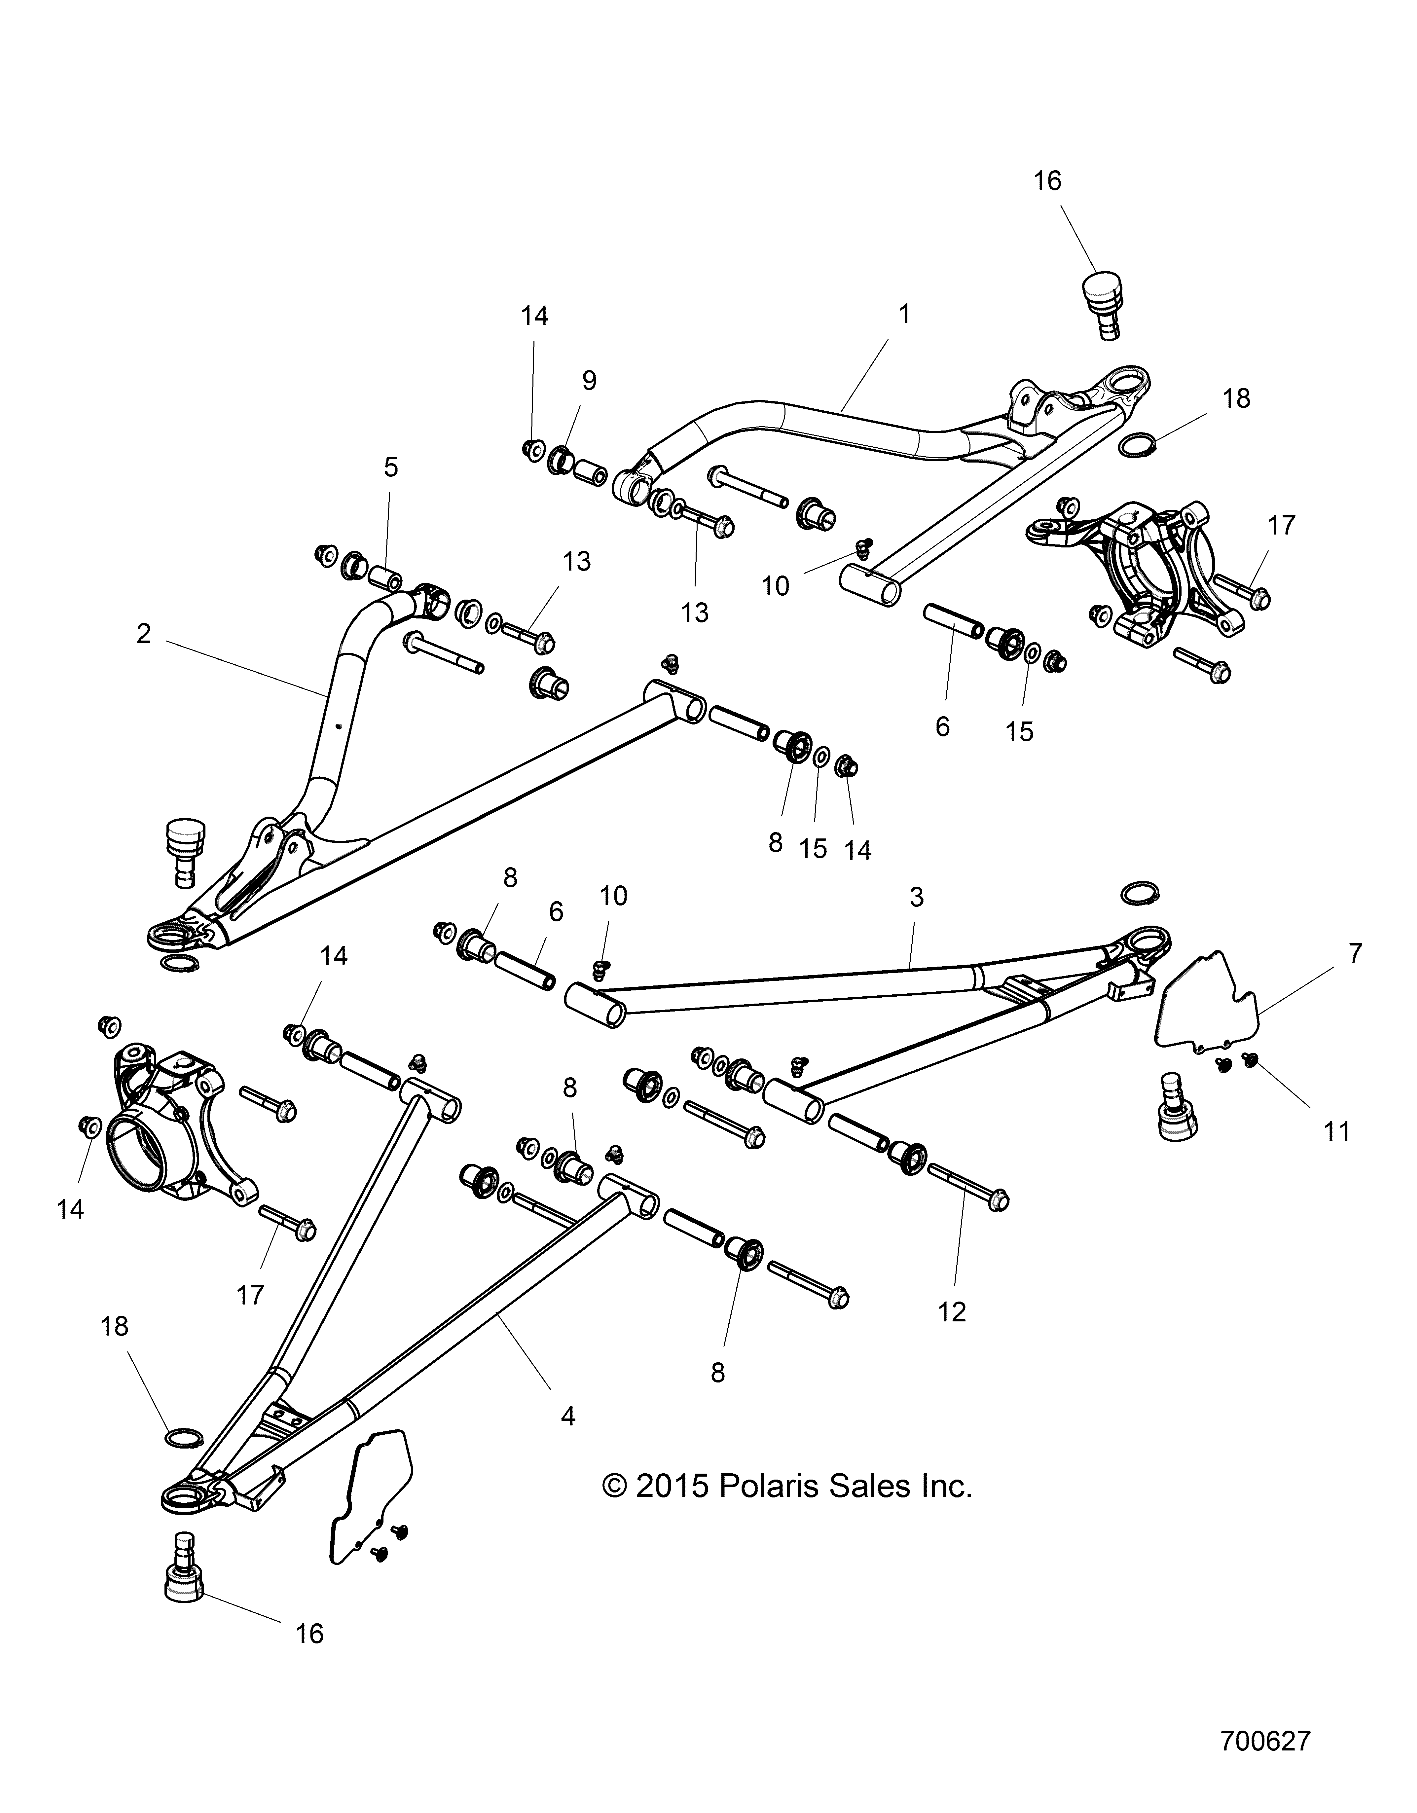 Foto diagrama Polaris que contem a peça 1018826-385